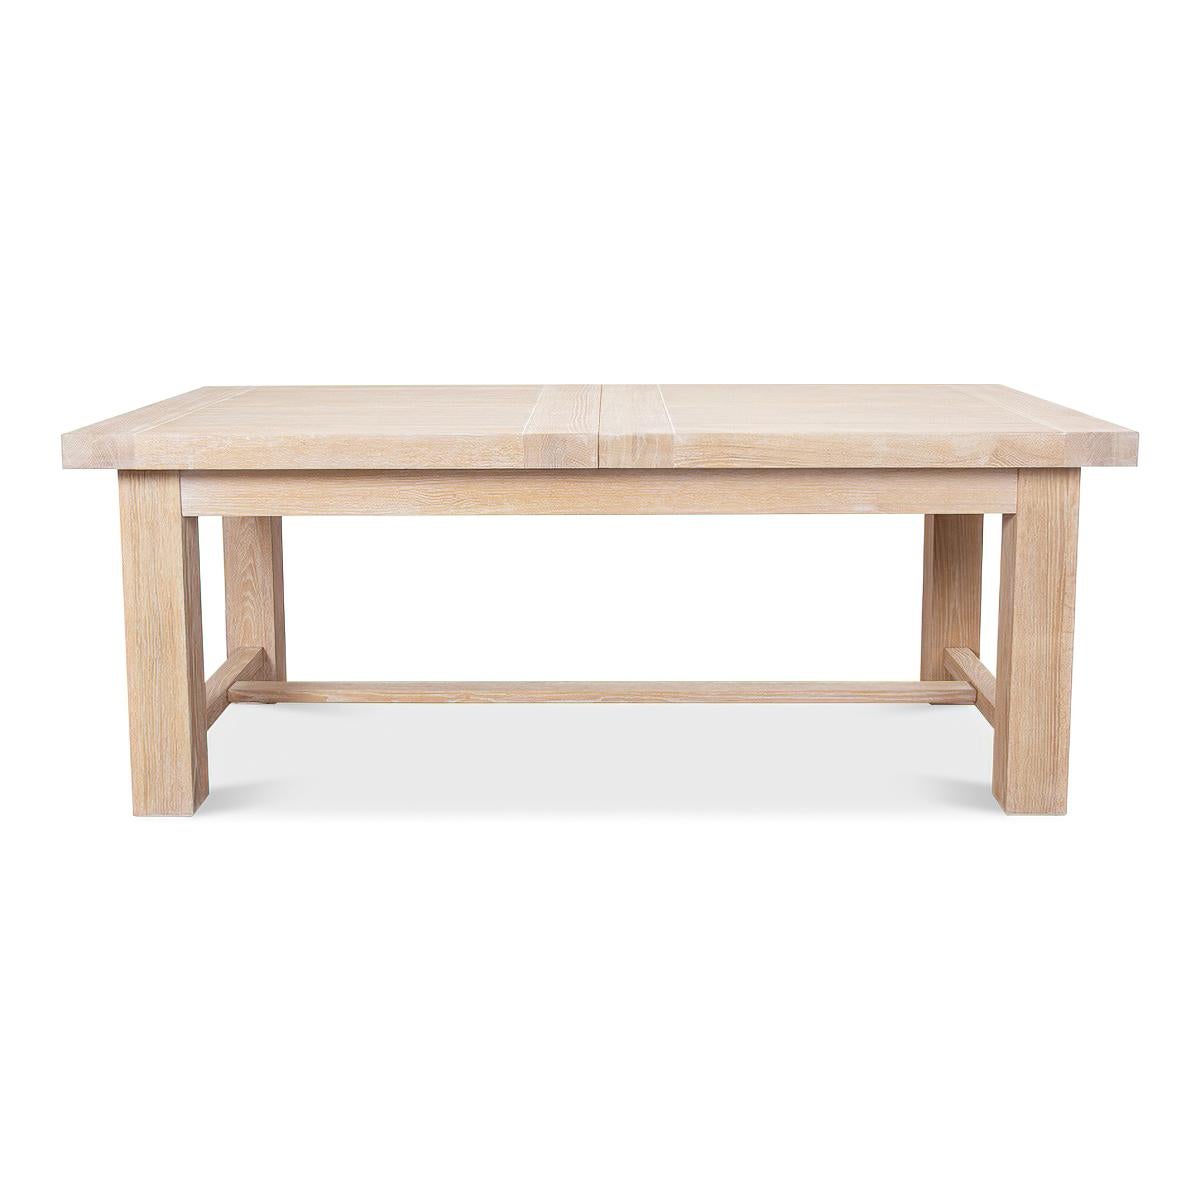 Une table à manger suédoise moderne en chêne. Cette table de salle à manger contemporaine au plateau épais en chêne est élevée sur une base substantielle avec un châssis en H. 

Dimensions ouvertes : 110